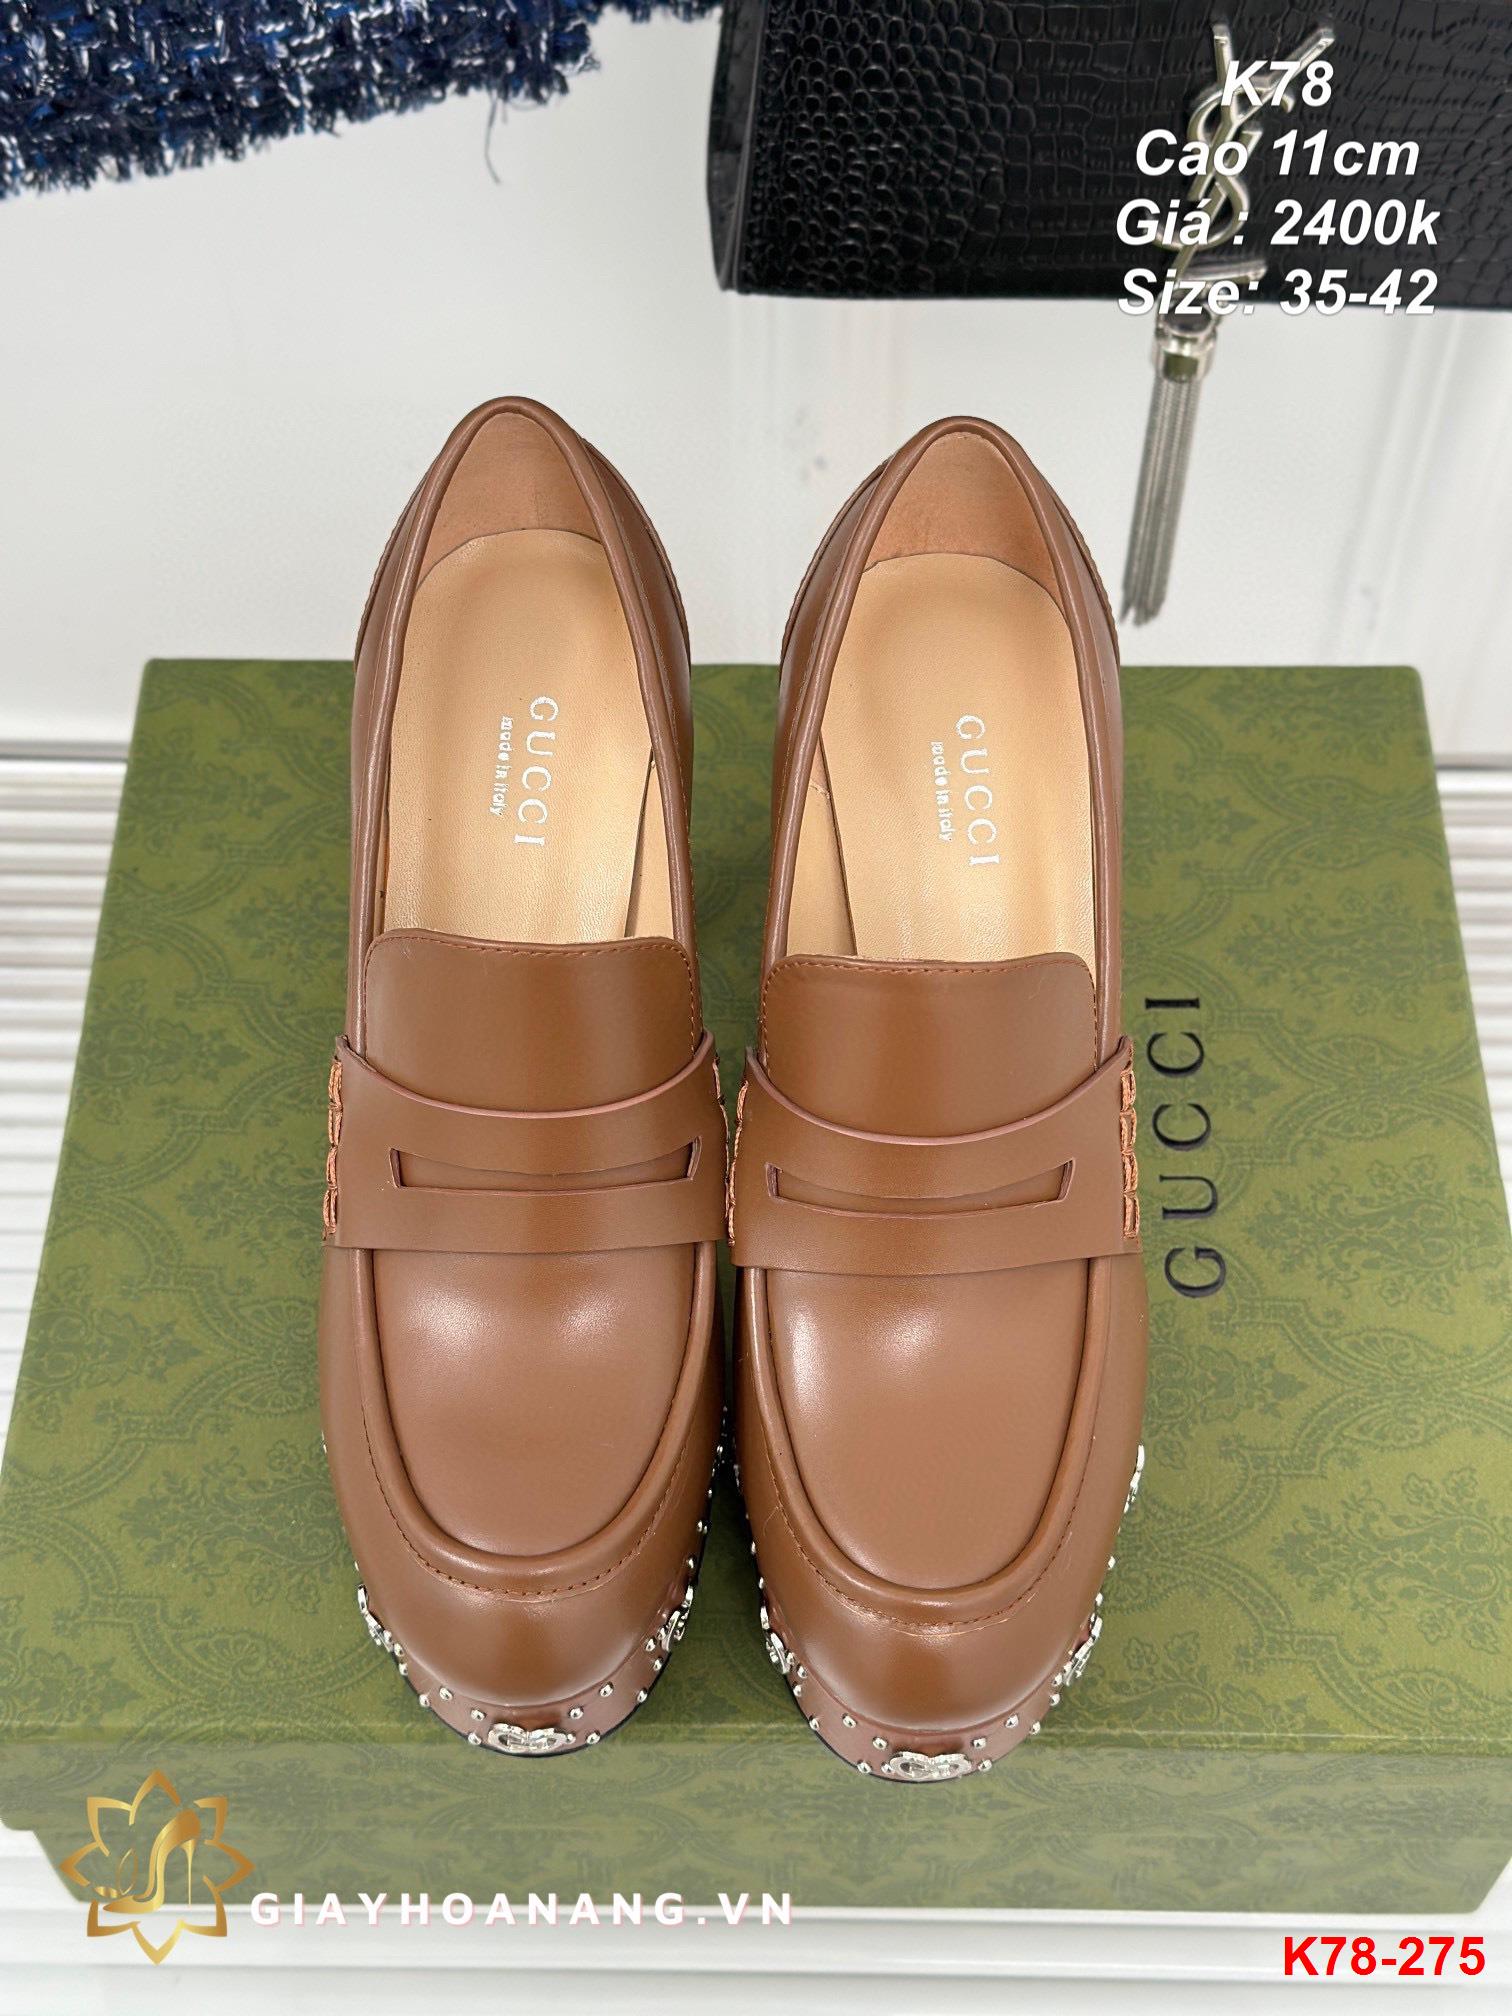 K78-275 Gucci giày cao 11cm siêu cấp